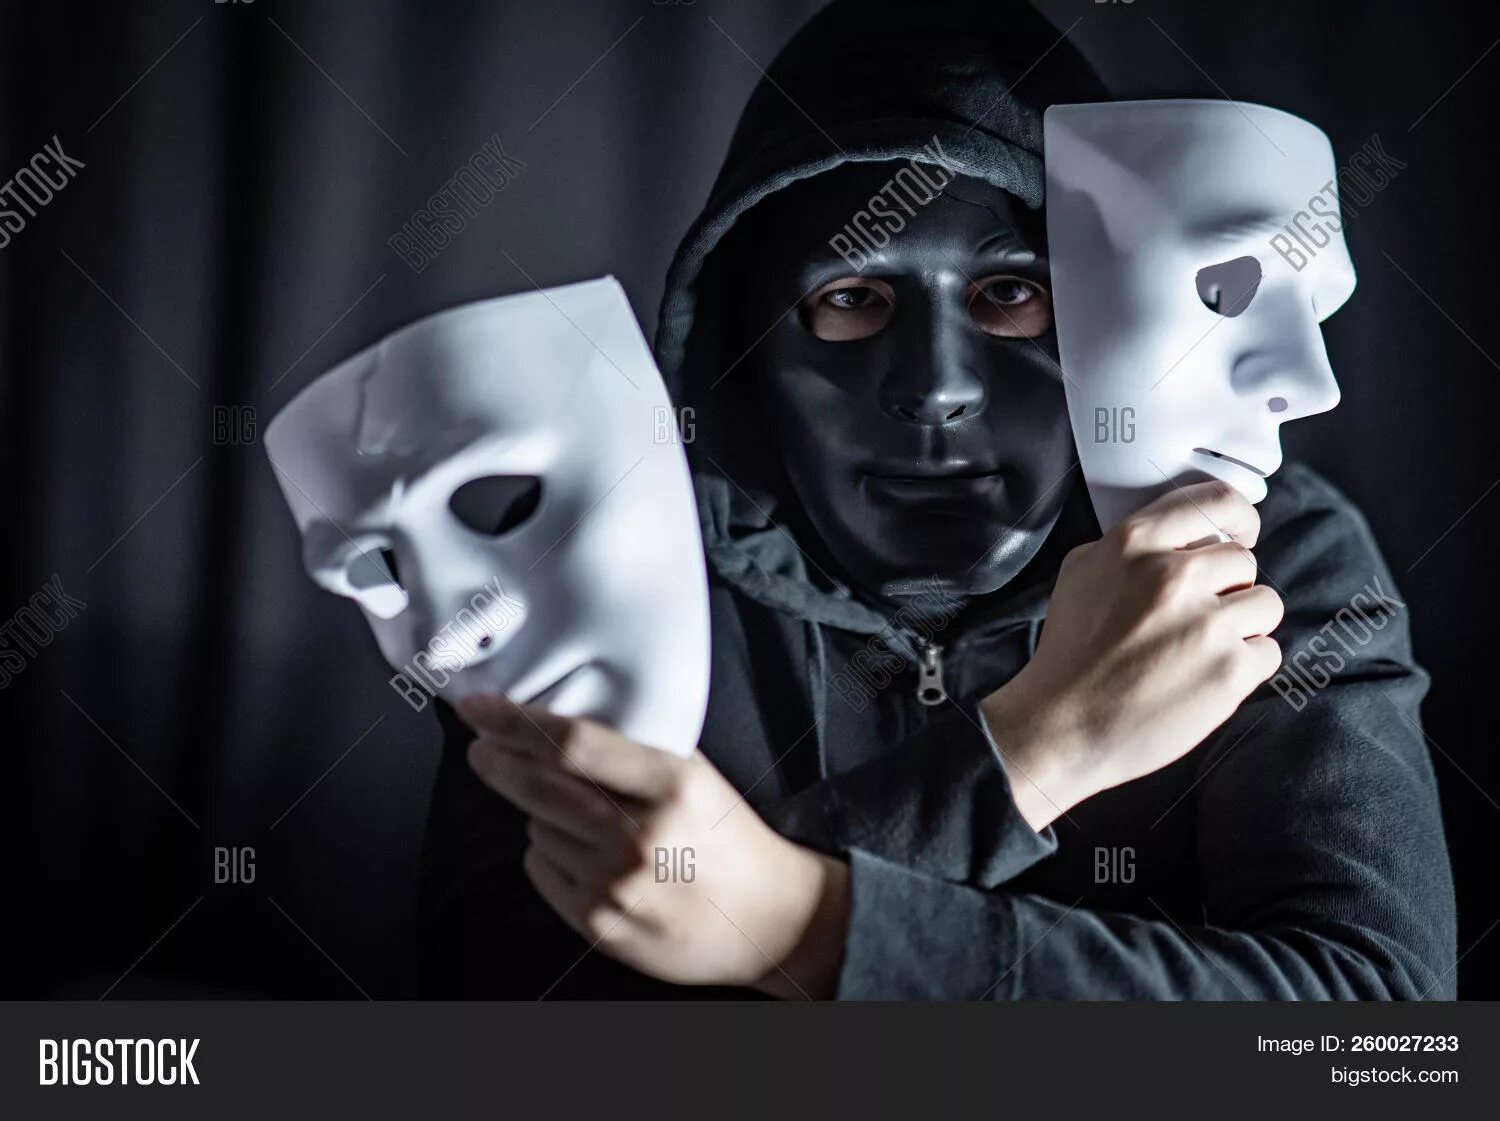 Игра белая маска. Человек в маске. Человек надевает маску. Человек в театральной маске. Человек в белой маске.